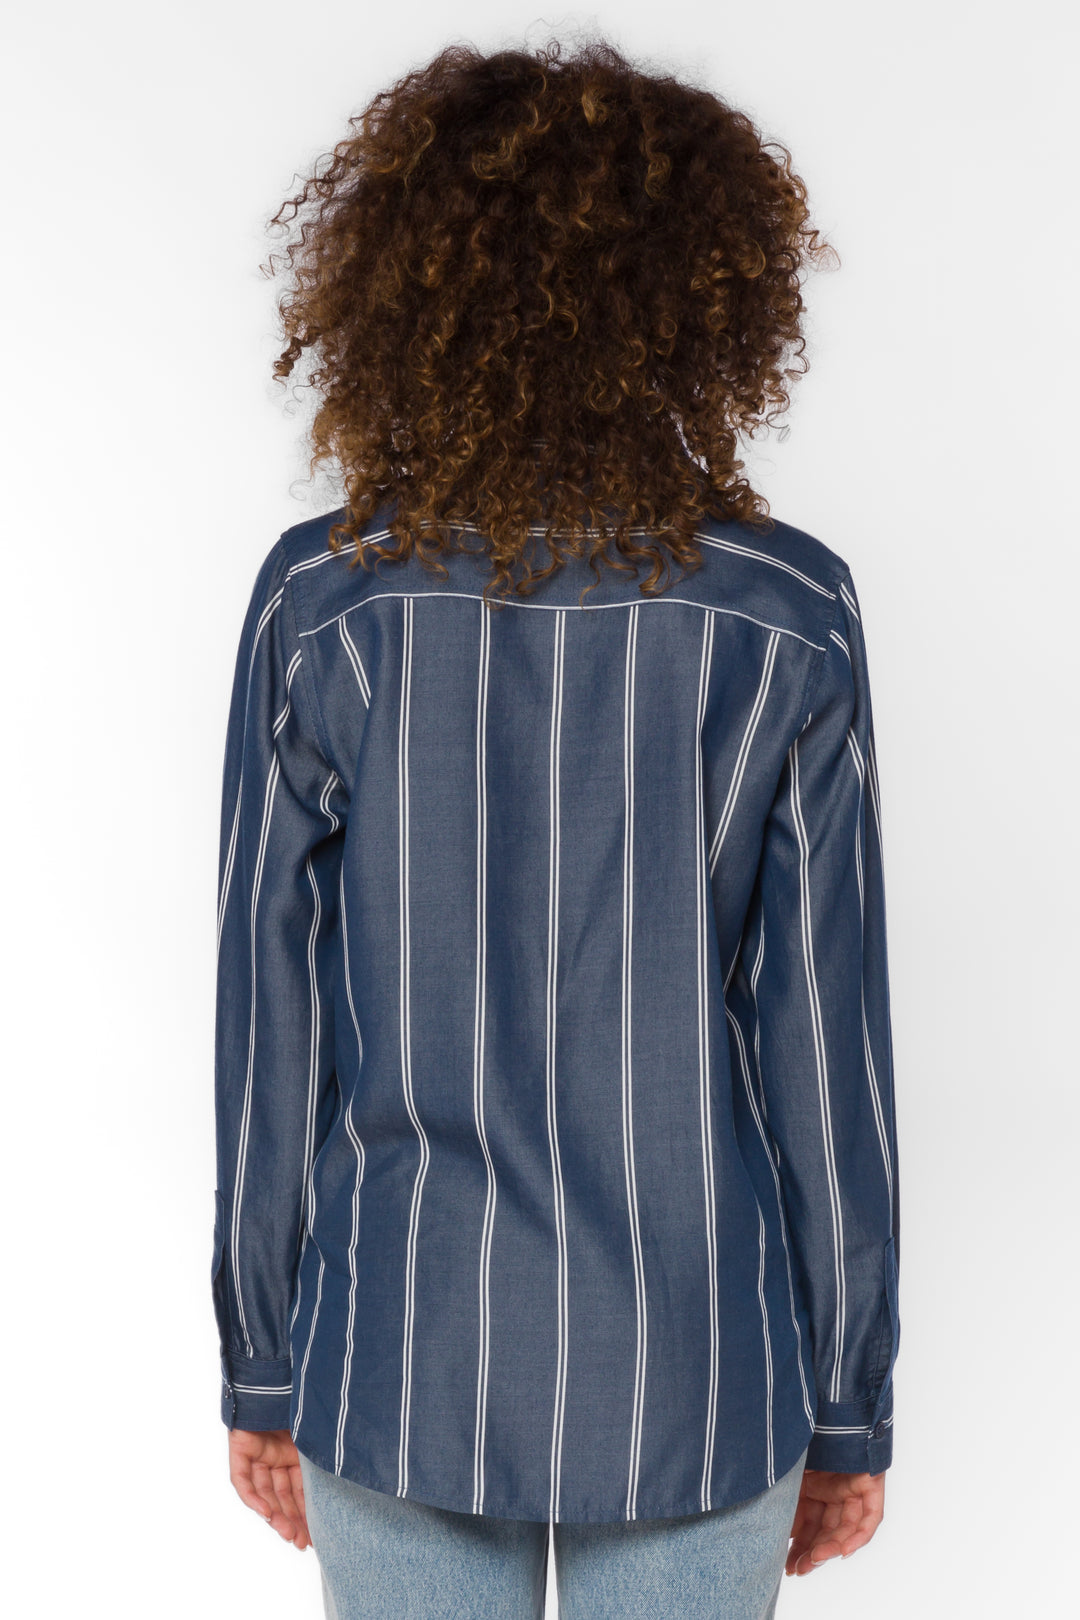 Talma Navy Stripe Shirt - Tops - Velvet Heart Clothing